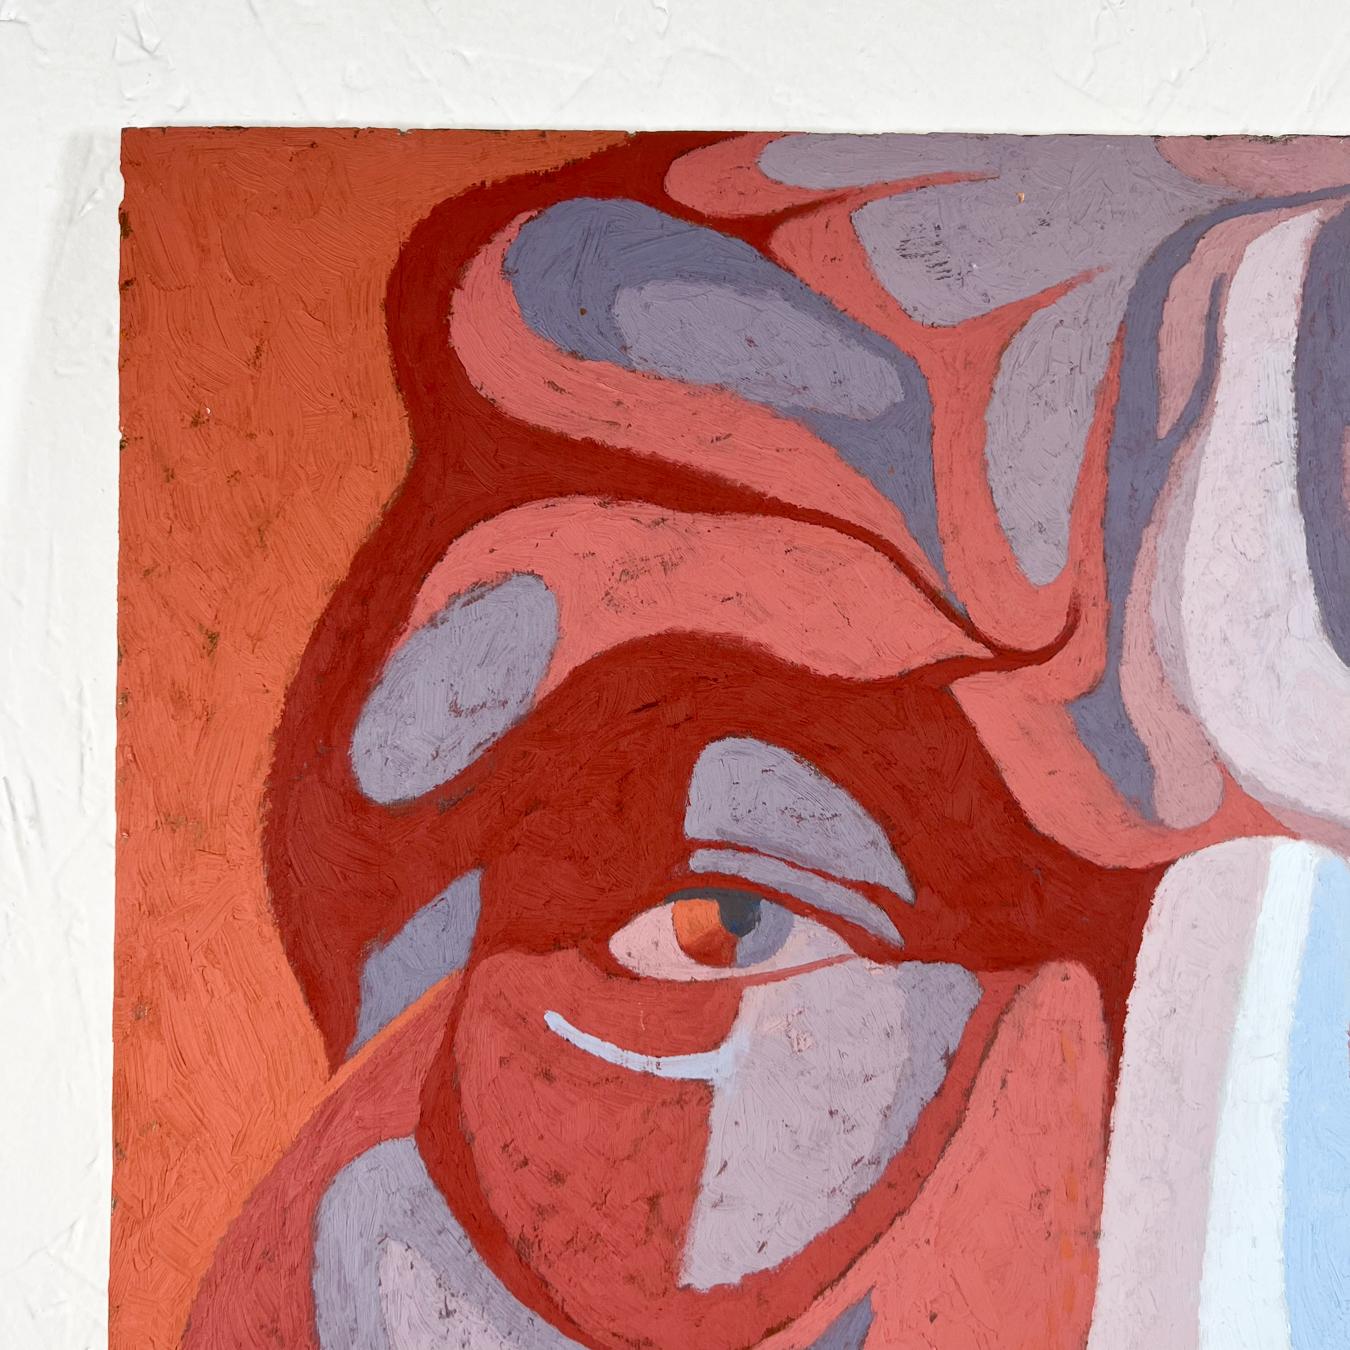 1978 Kunstwerk Alter Mann Gemälde Öl Hovland Stil von Picasso
22 x 28 x 0,25 dick
signiert und datiert 1978.
Originaler Vintage-Zustand.
Bitte sehen Sie sich die bereitgestellten Bilder an.